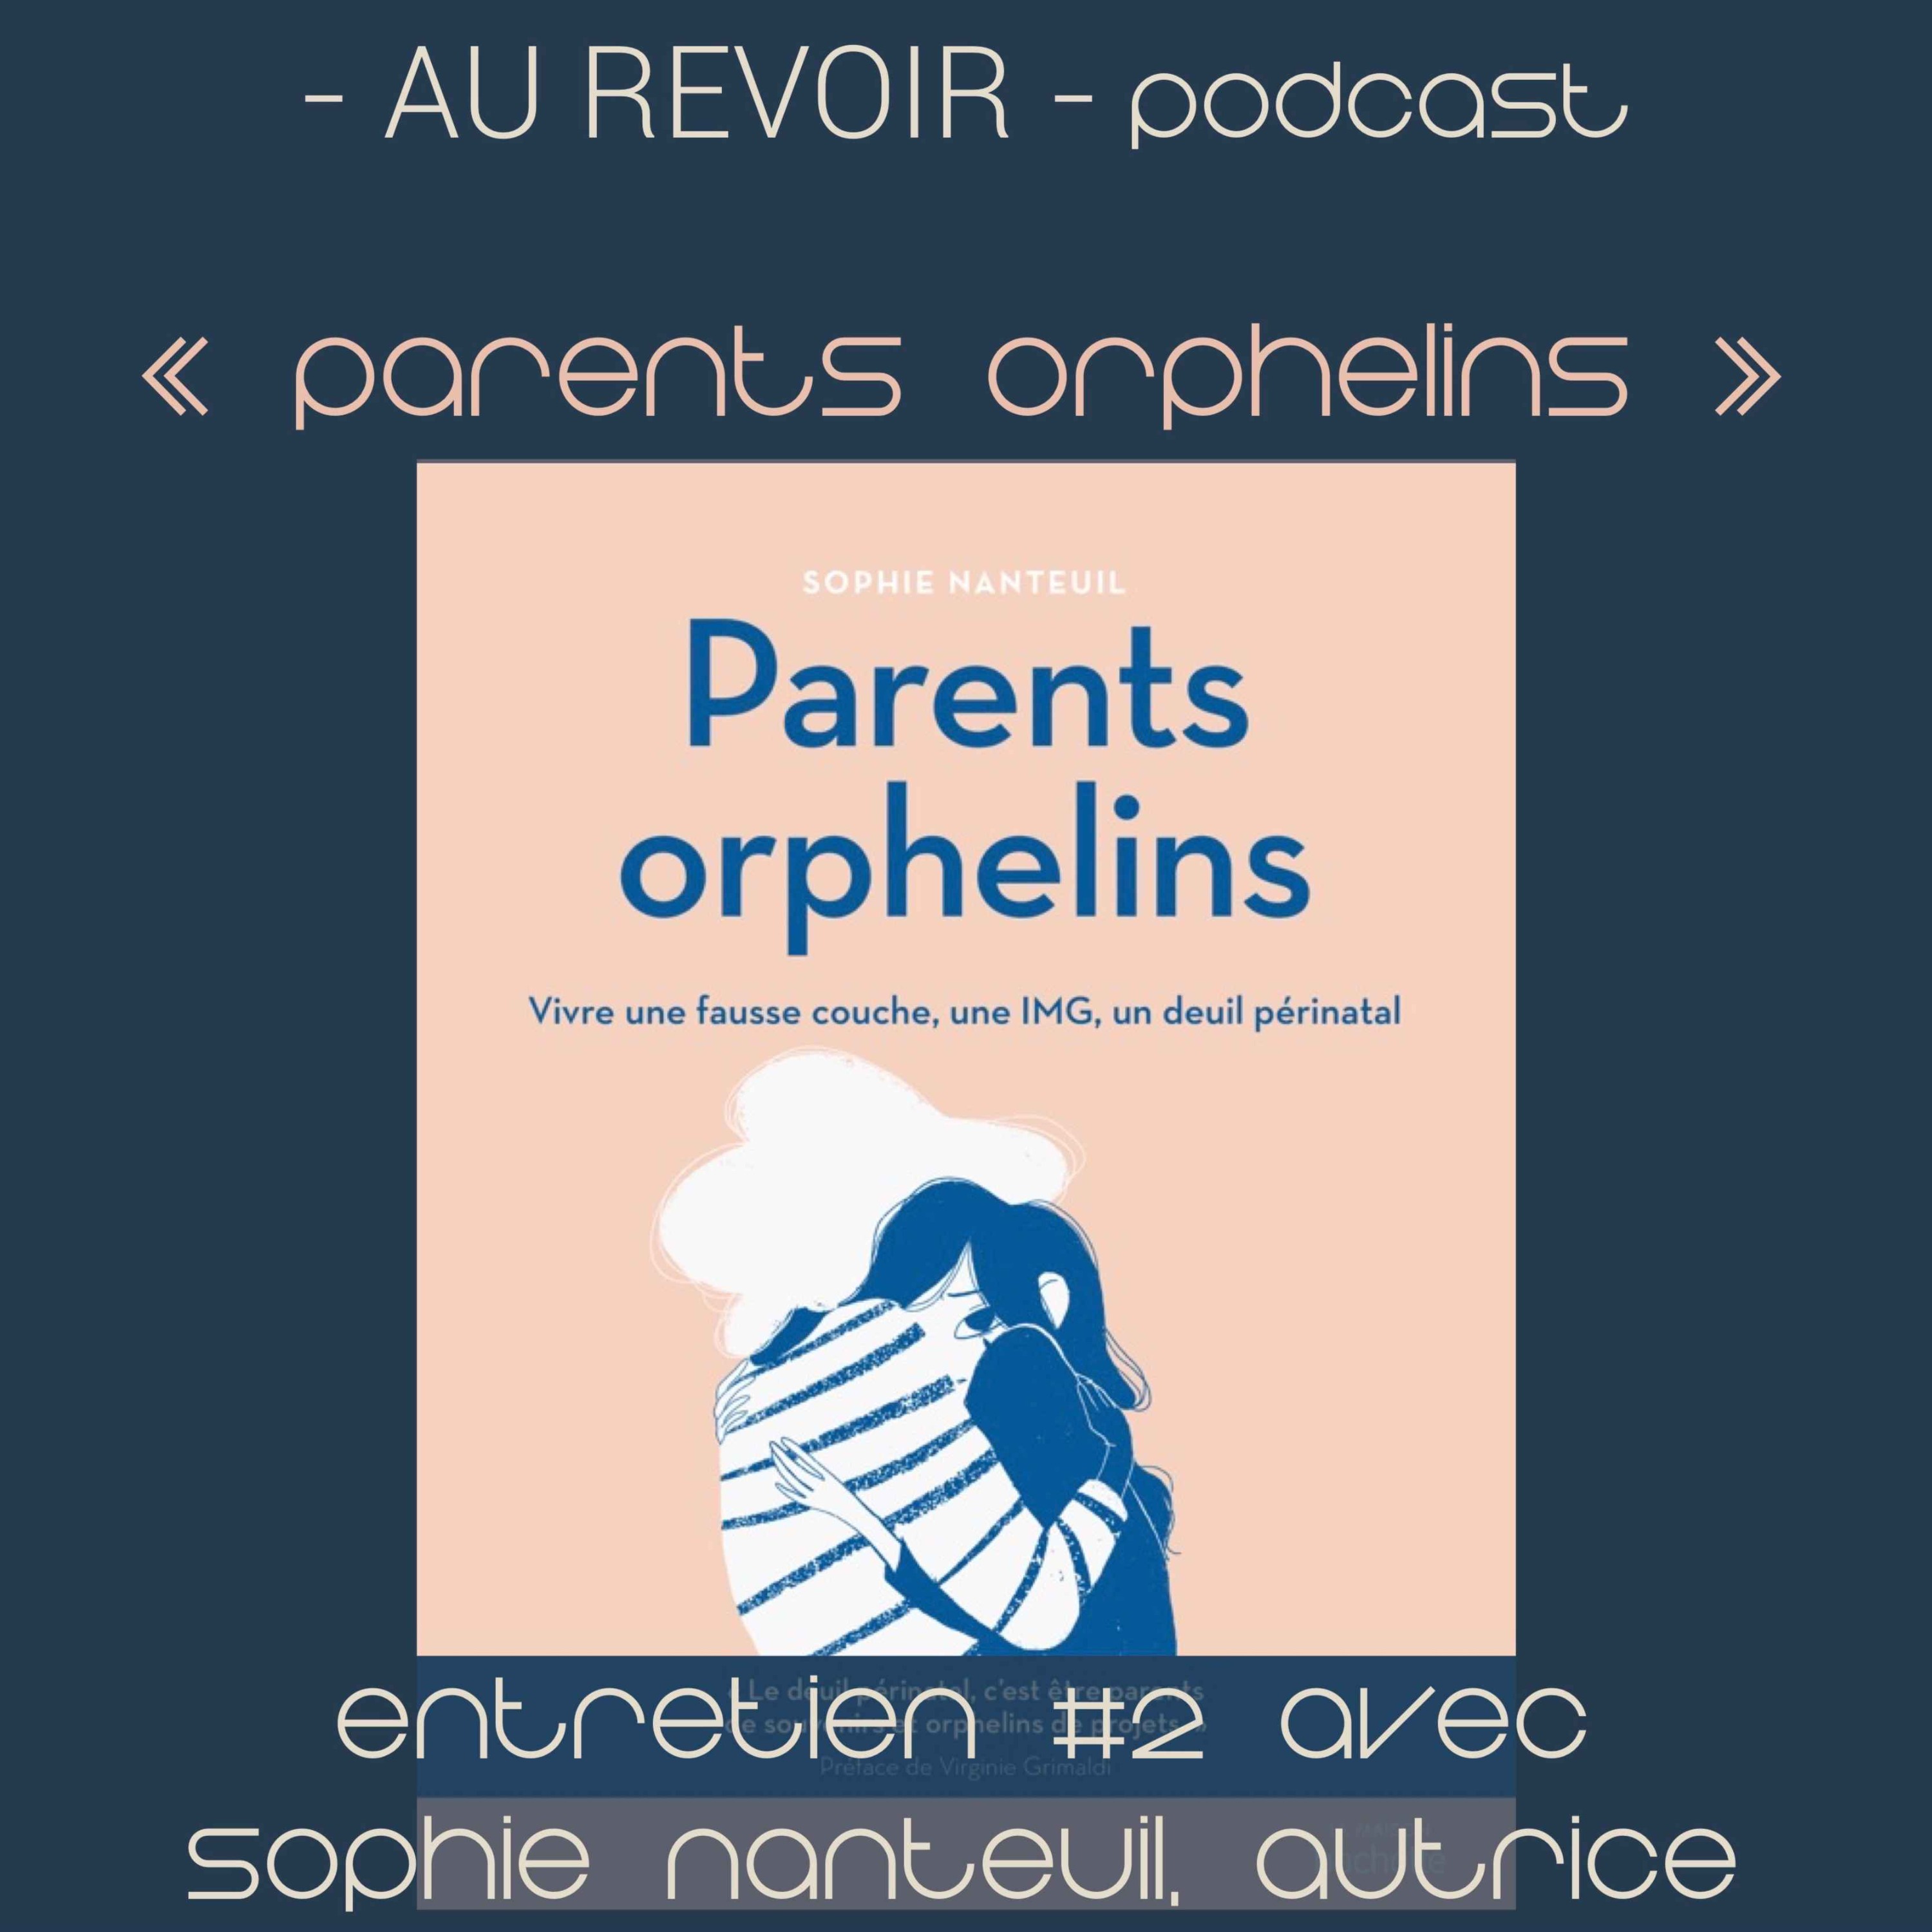 Les entretiens d’Au Revoir Podcast : ”Parents orphelins” avec Sophie Nanteuil